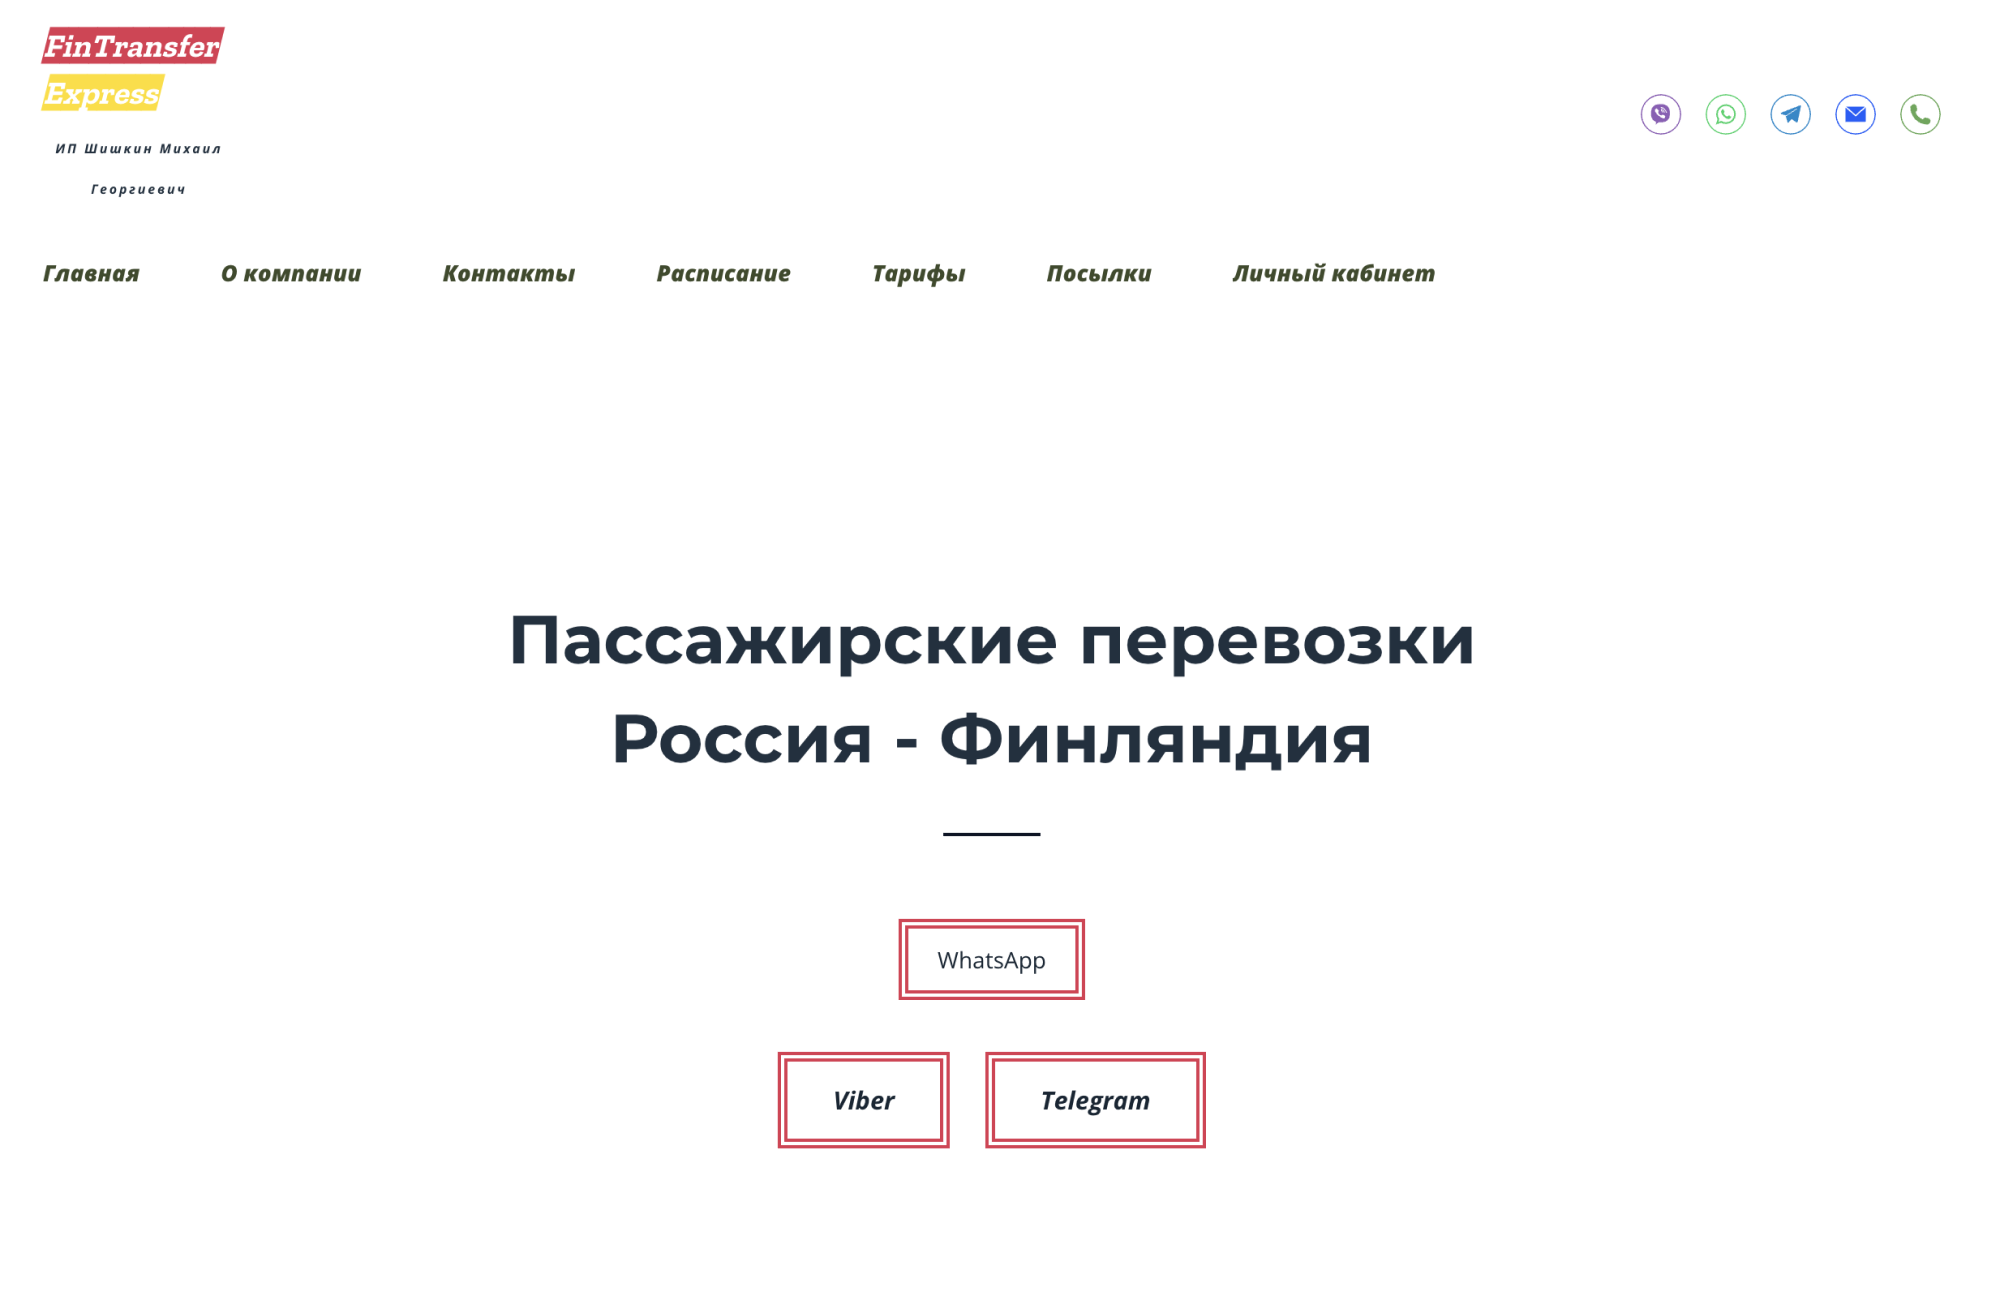 Так выглядит новый сайт, о котором пишут в предупреждении выше. Они успели сменить домен — с предыдущего сайта fntransfer.ru переадресация идет на finexpres.ru. Будьте внимательны и не перечисляйте им деньги